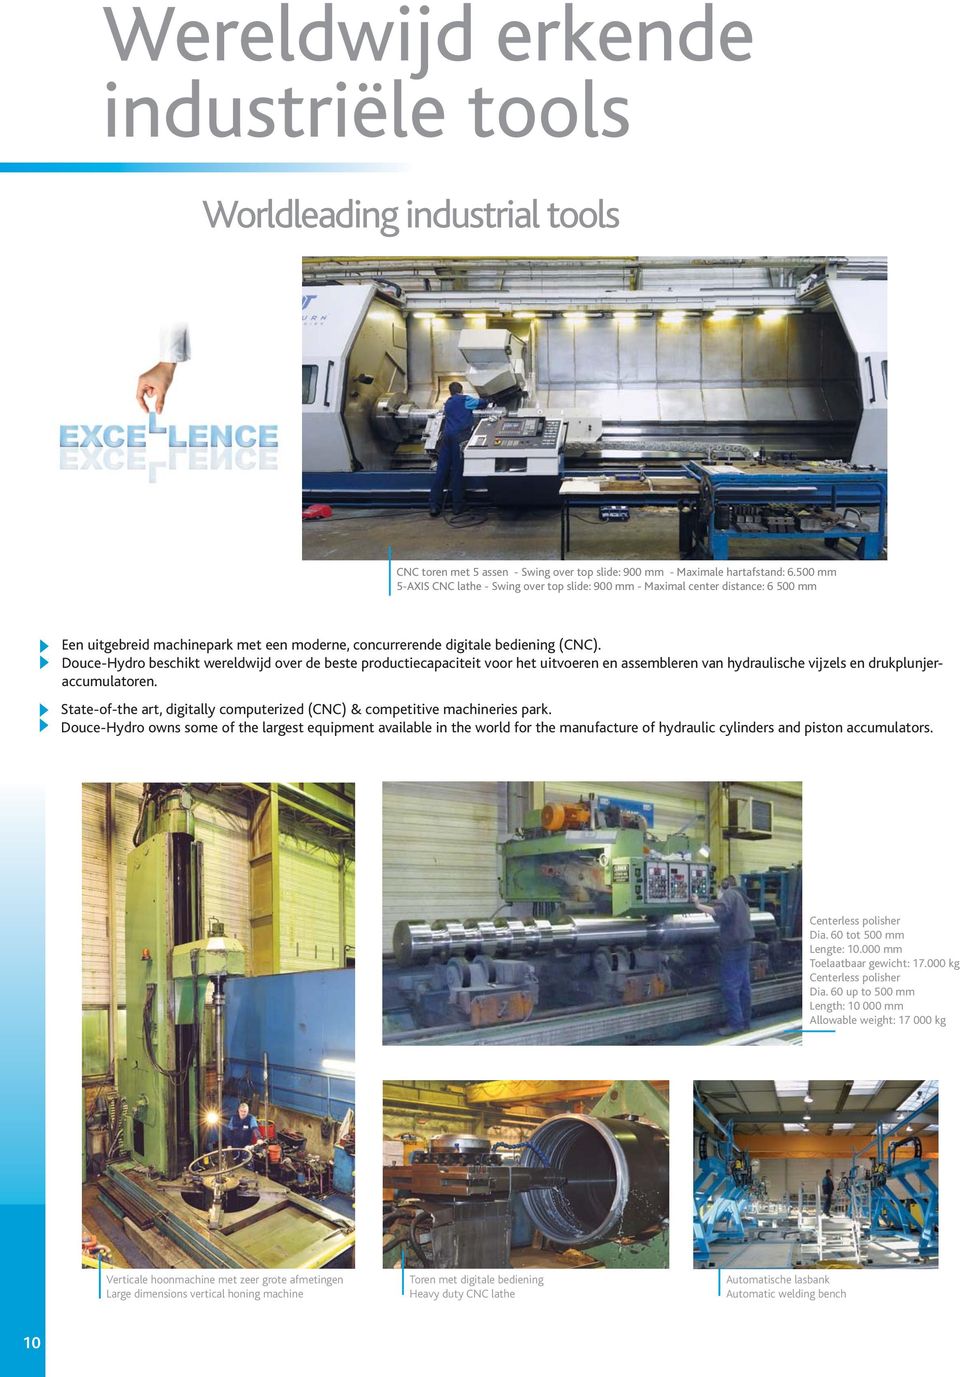 Douce-Hydro beschikt wereldwijd over de beste productiecapaciteit voor het uitvoeren en assembleren van hydraulische vijzels en drukplunjeraccumulatoren.